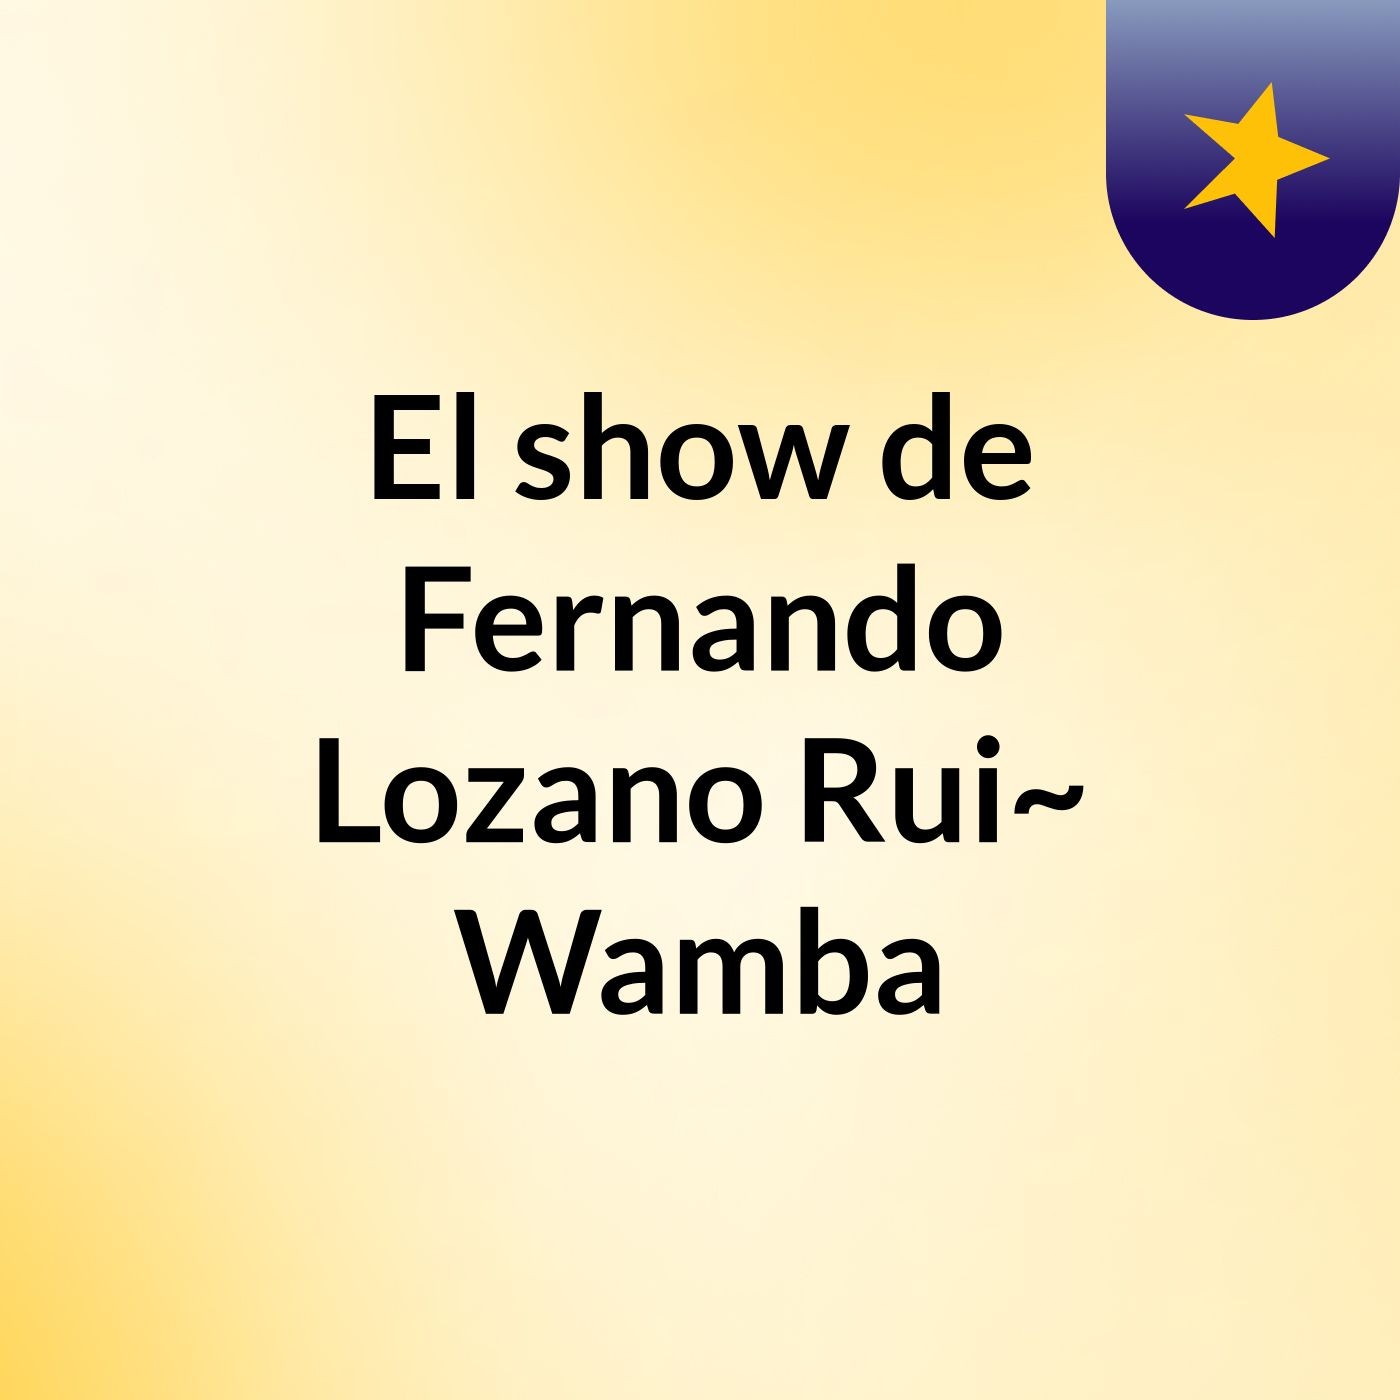 El show de Fernando Lozano Rui~ Wamba